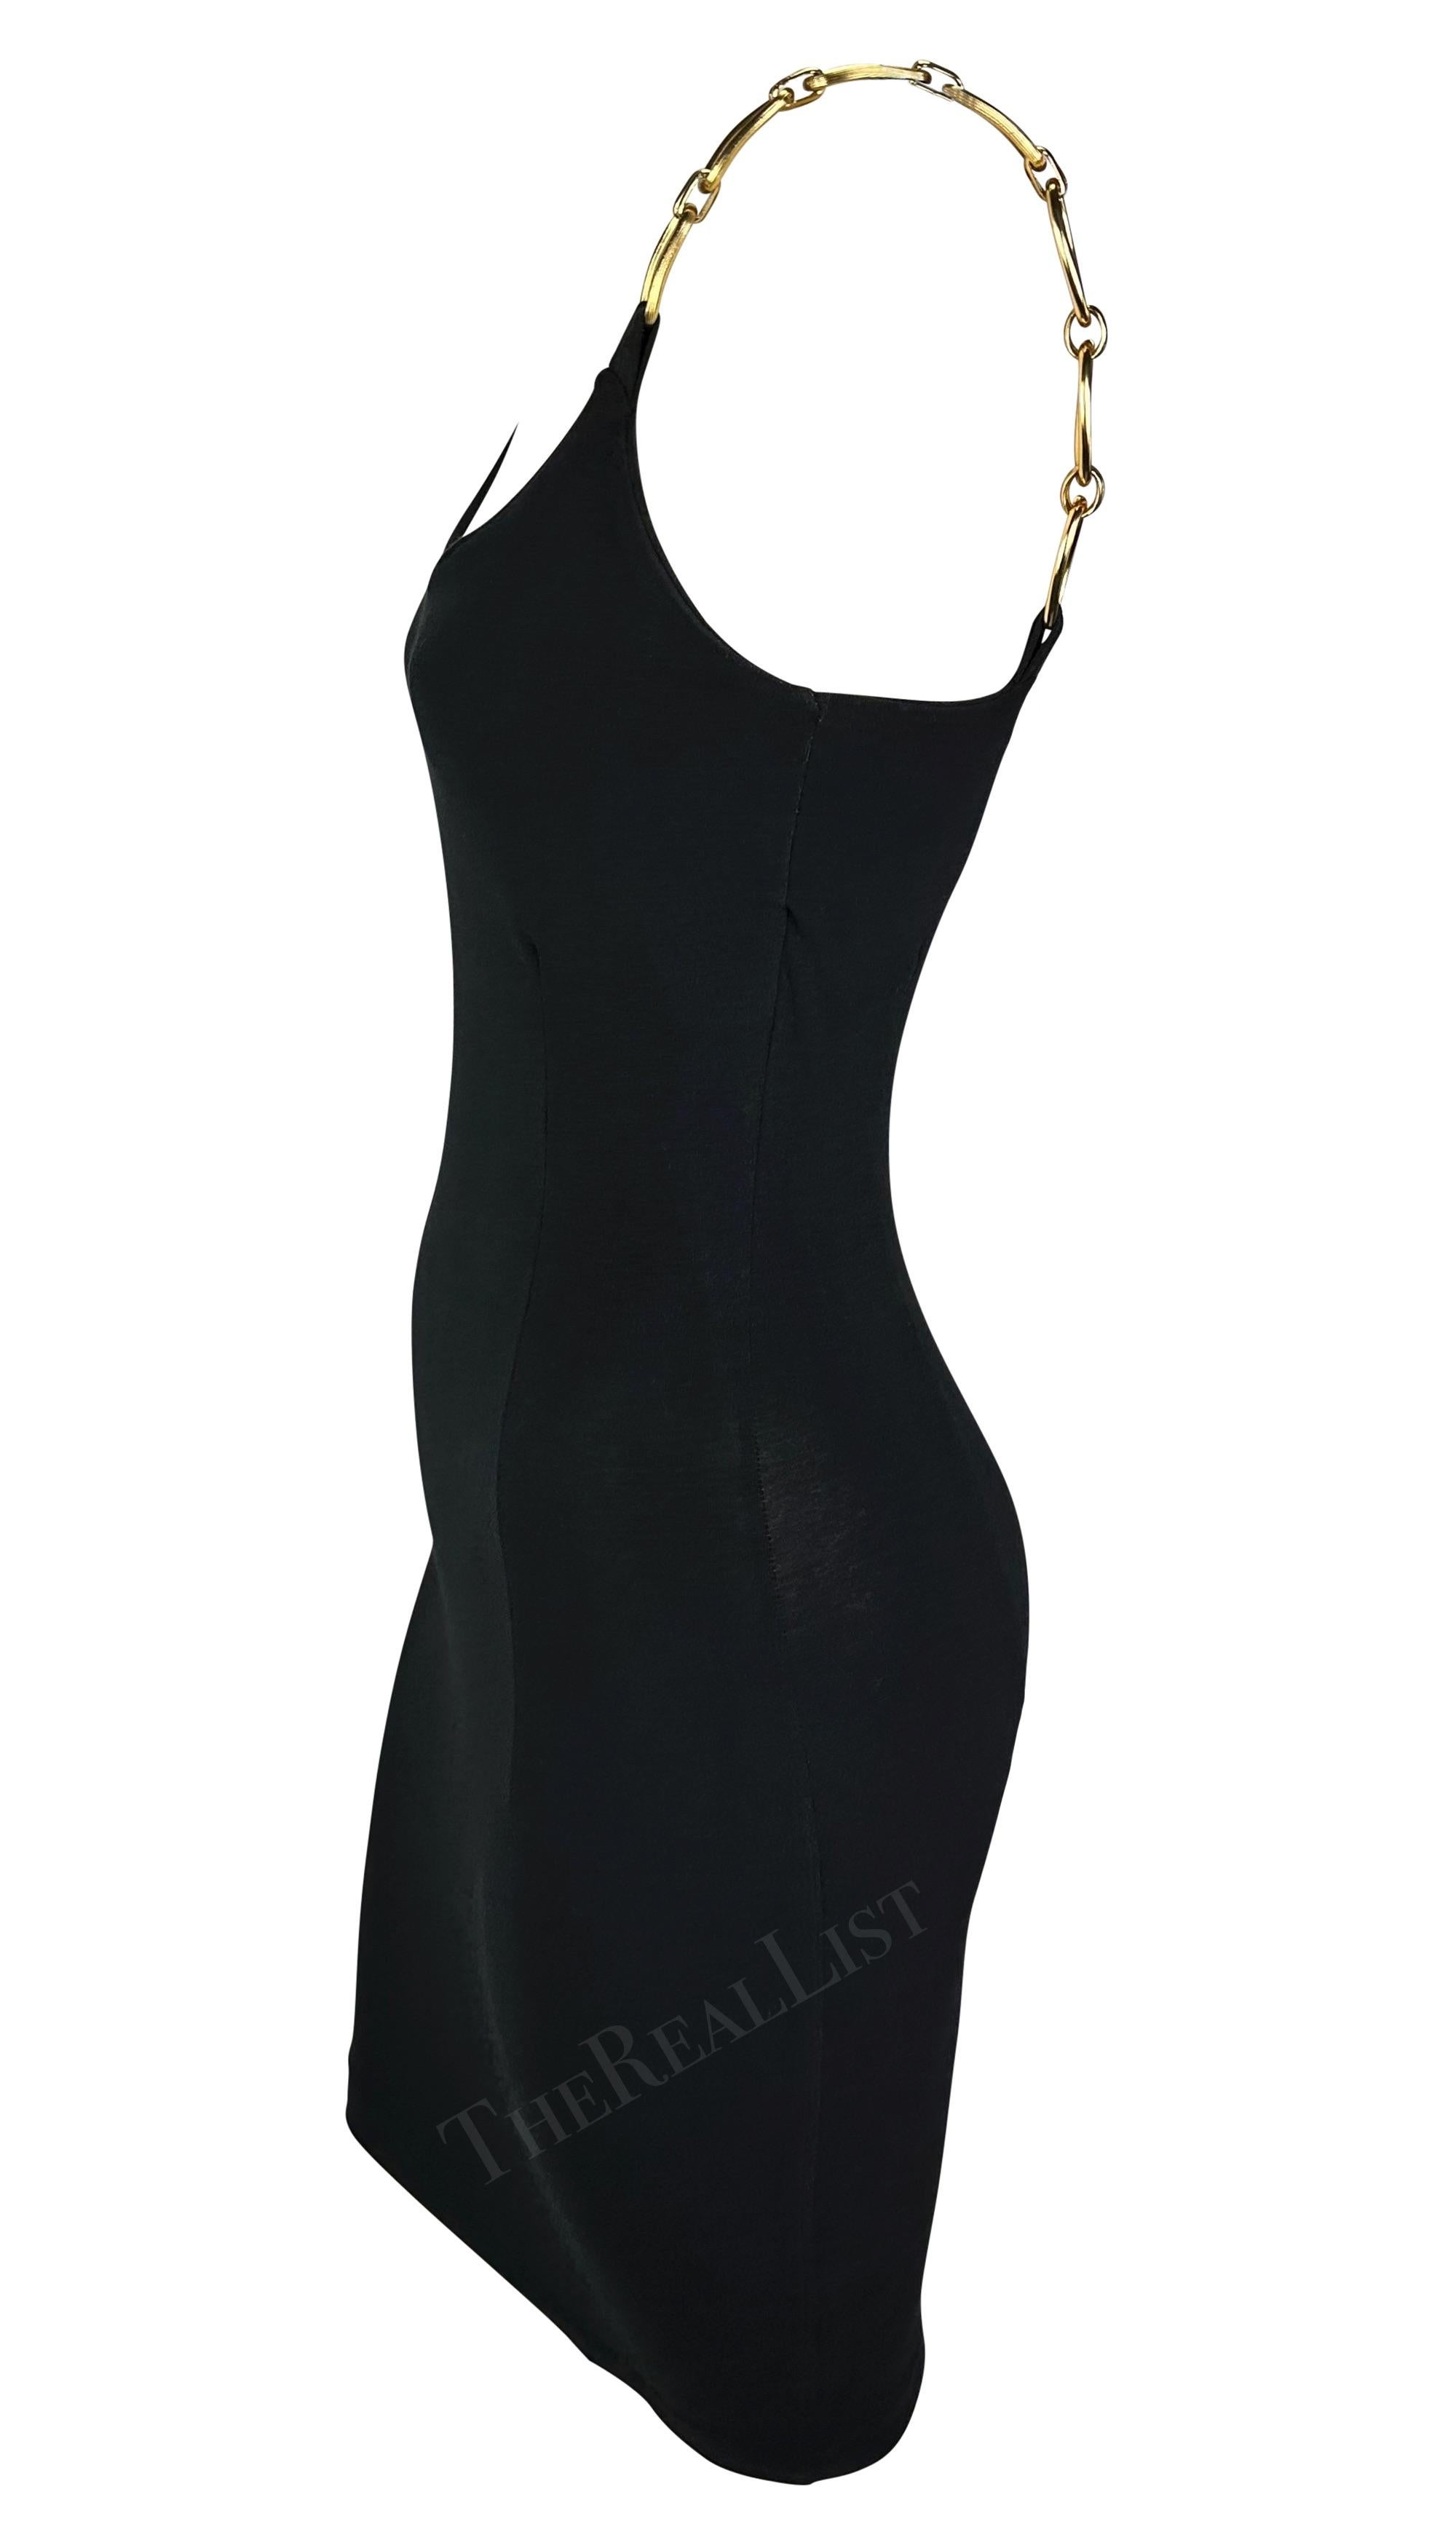 S/S 1991 Dolce & Gabbana Black Bodycon Gold Chain Strap Mini Dress For Sale 1